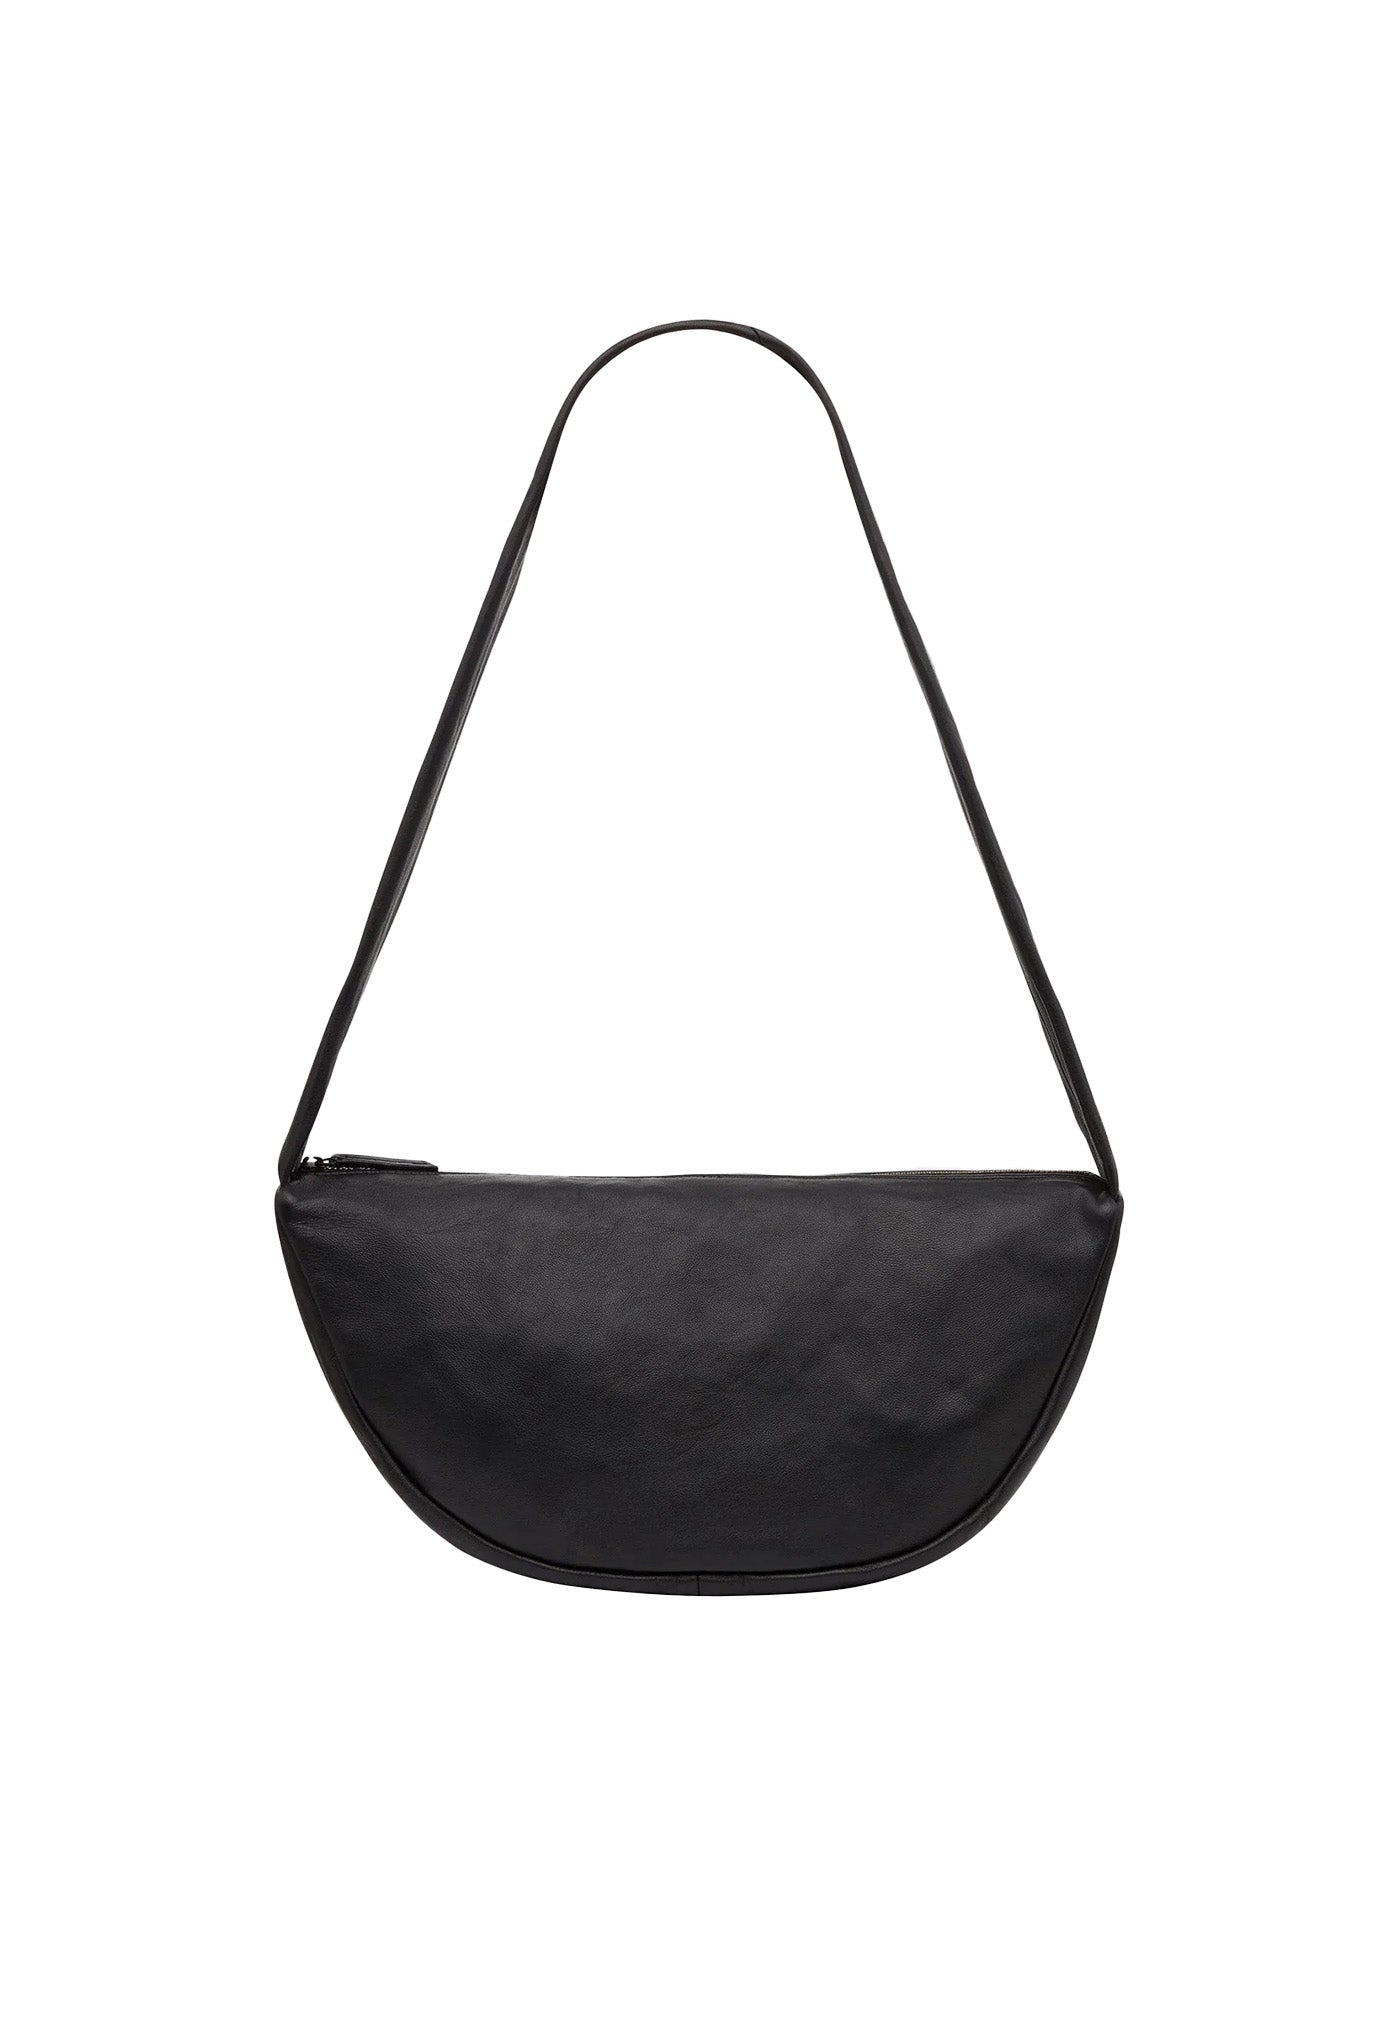 Soft Crescent Bag - Black sold by Angel Divine